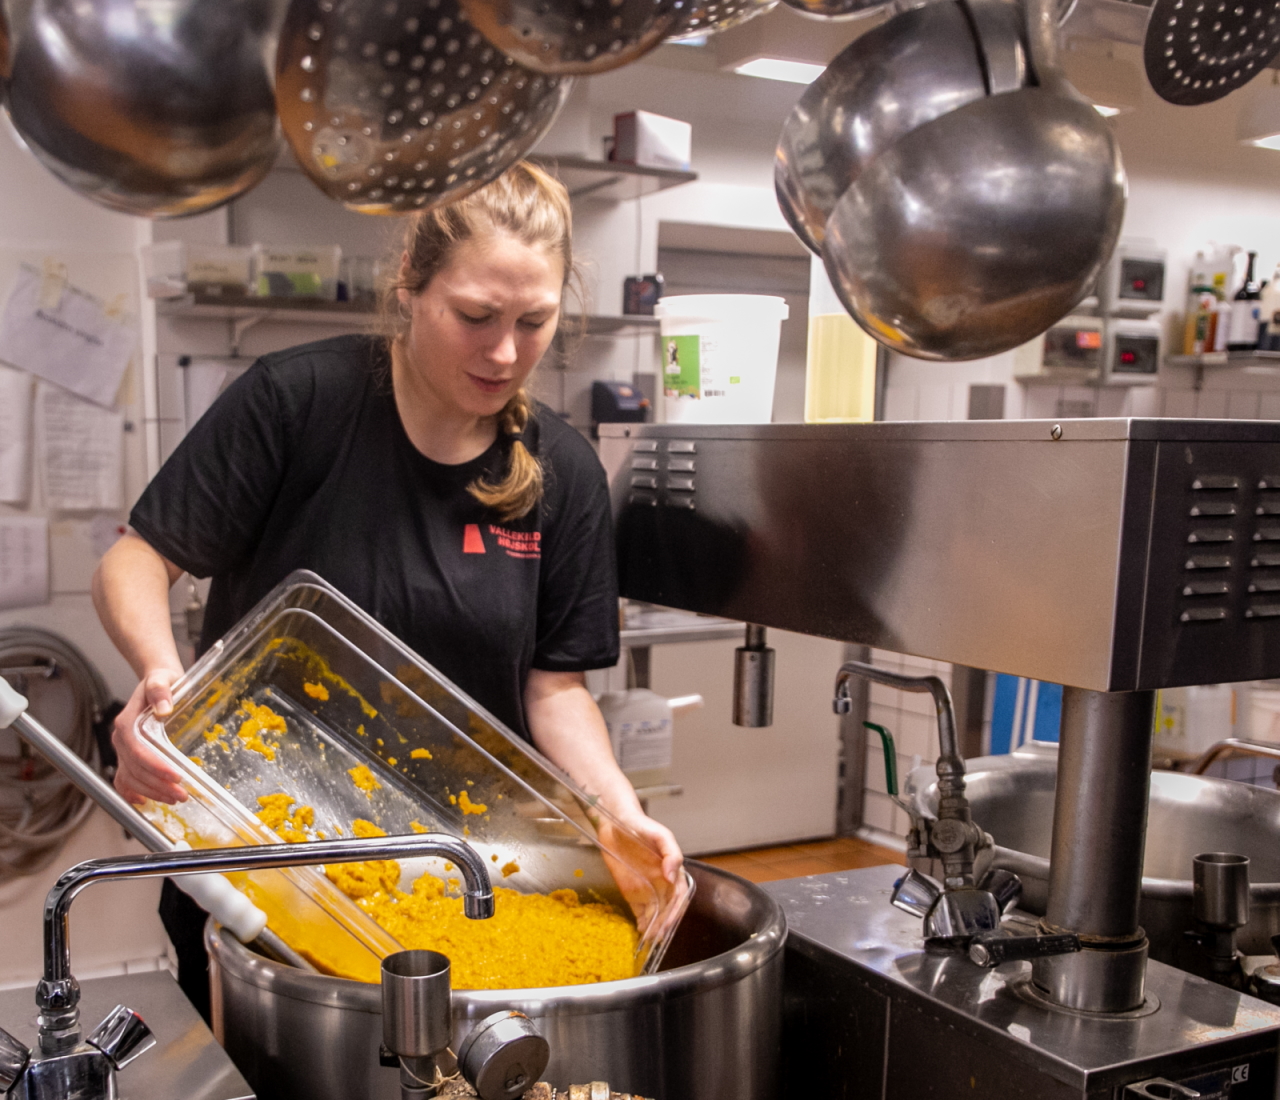 At bekæmpe madspild står højt på agendaen, og her tilsætter ernæringsassistent Camilla Wahlstrøm en optøet supperest til dagens butternut/squash-suppe